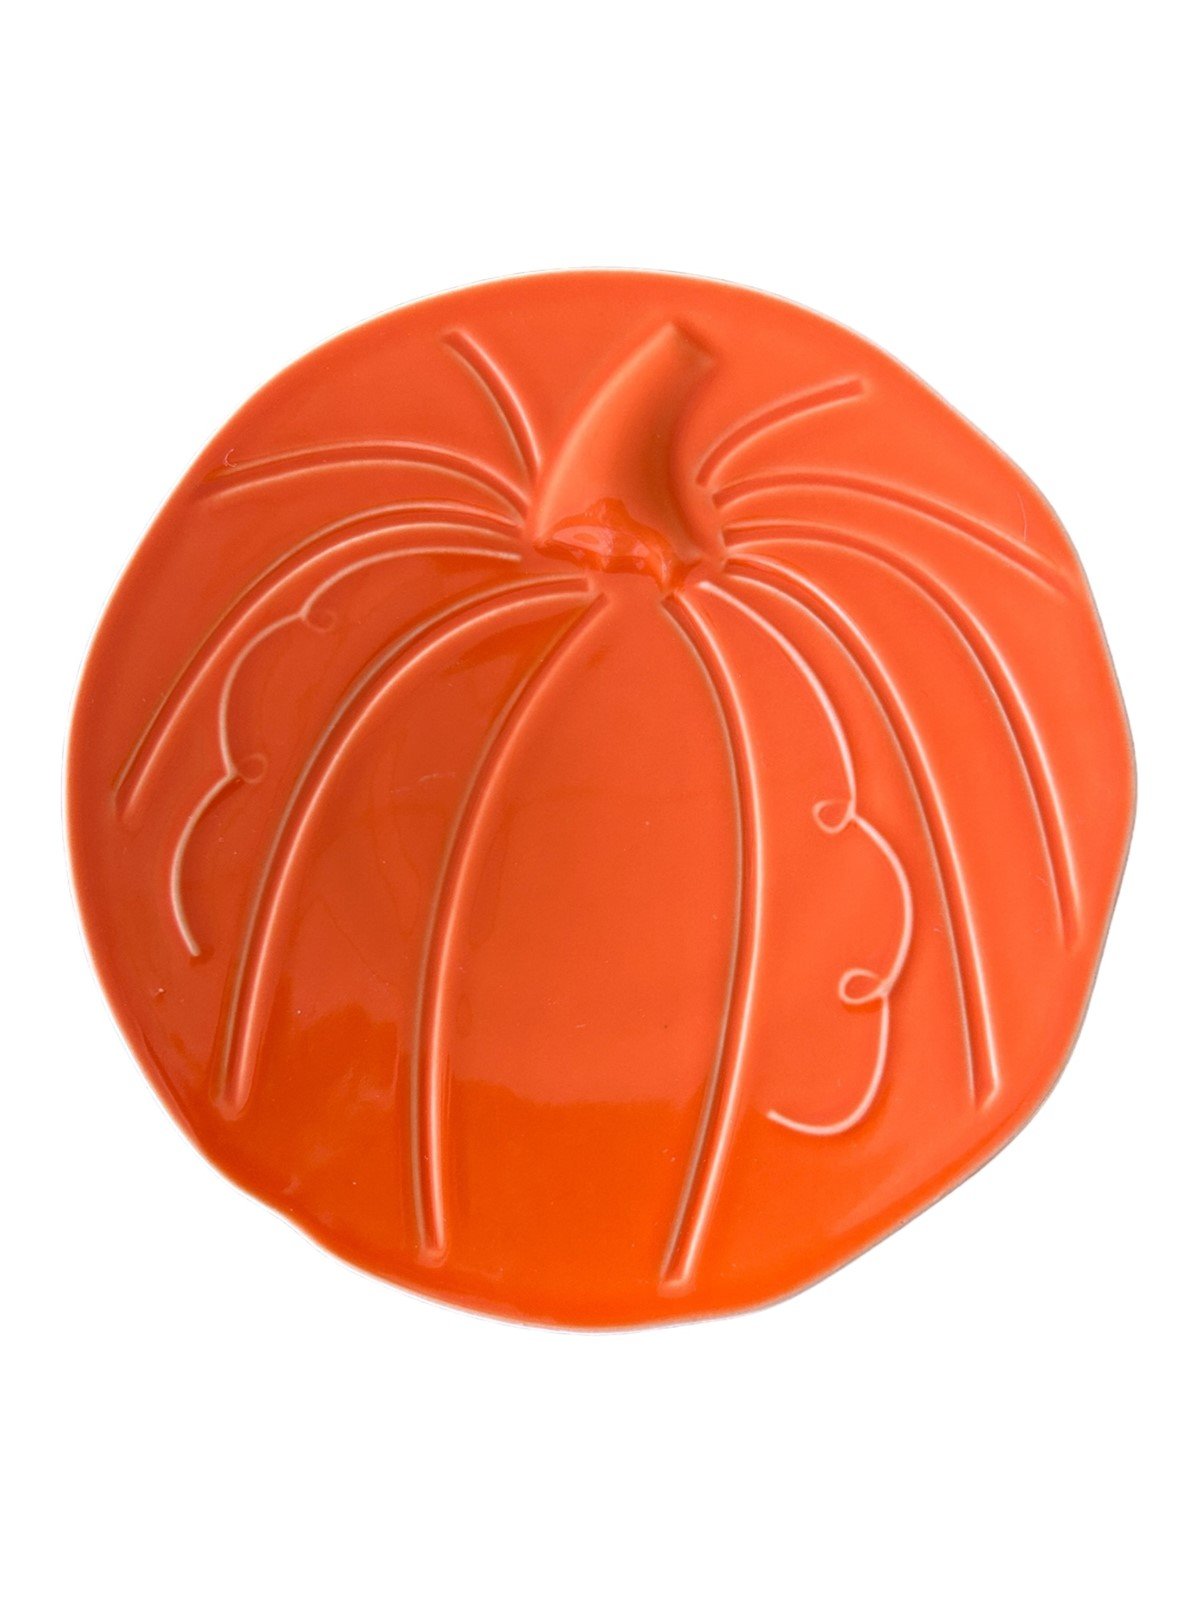 Fiesta - Poppy Orange Pumpkin Plate Homer Laughlin Ceramic Dish Kitchenware HLC